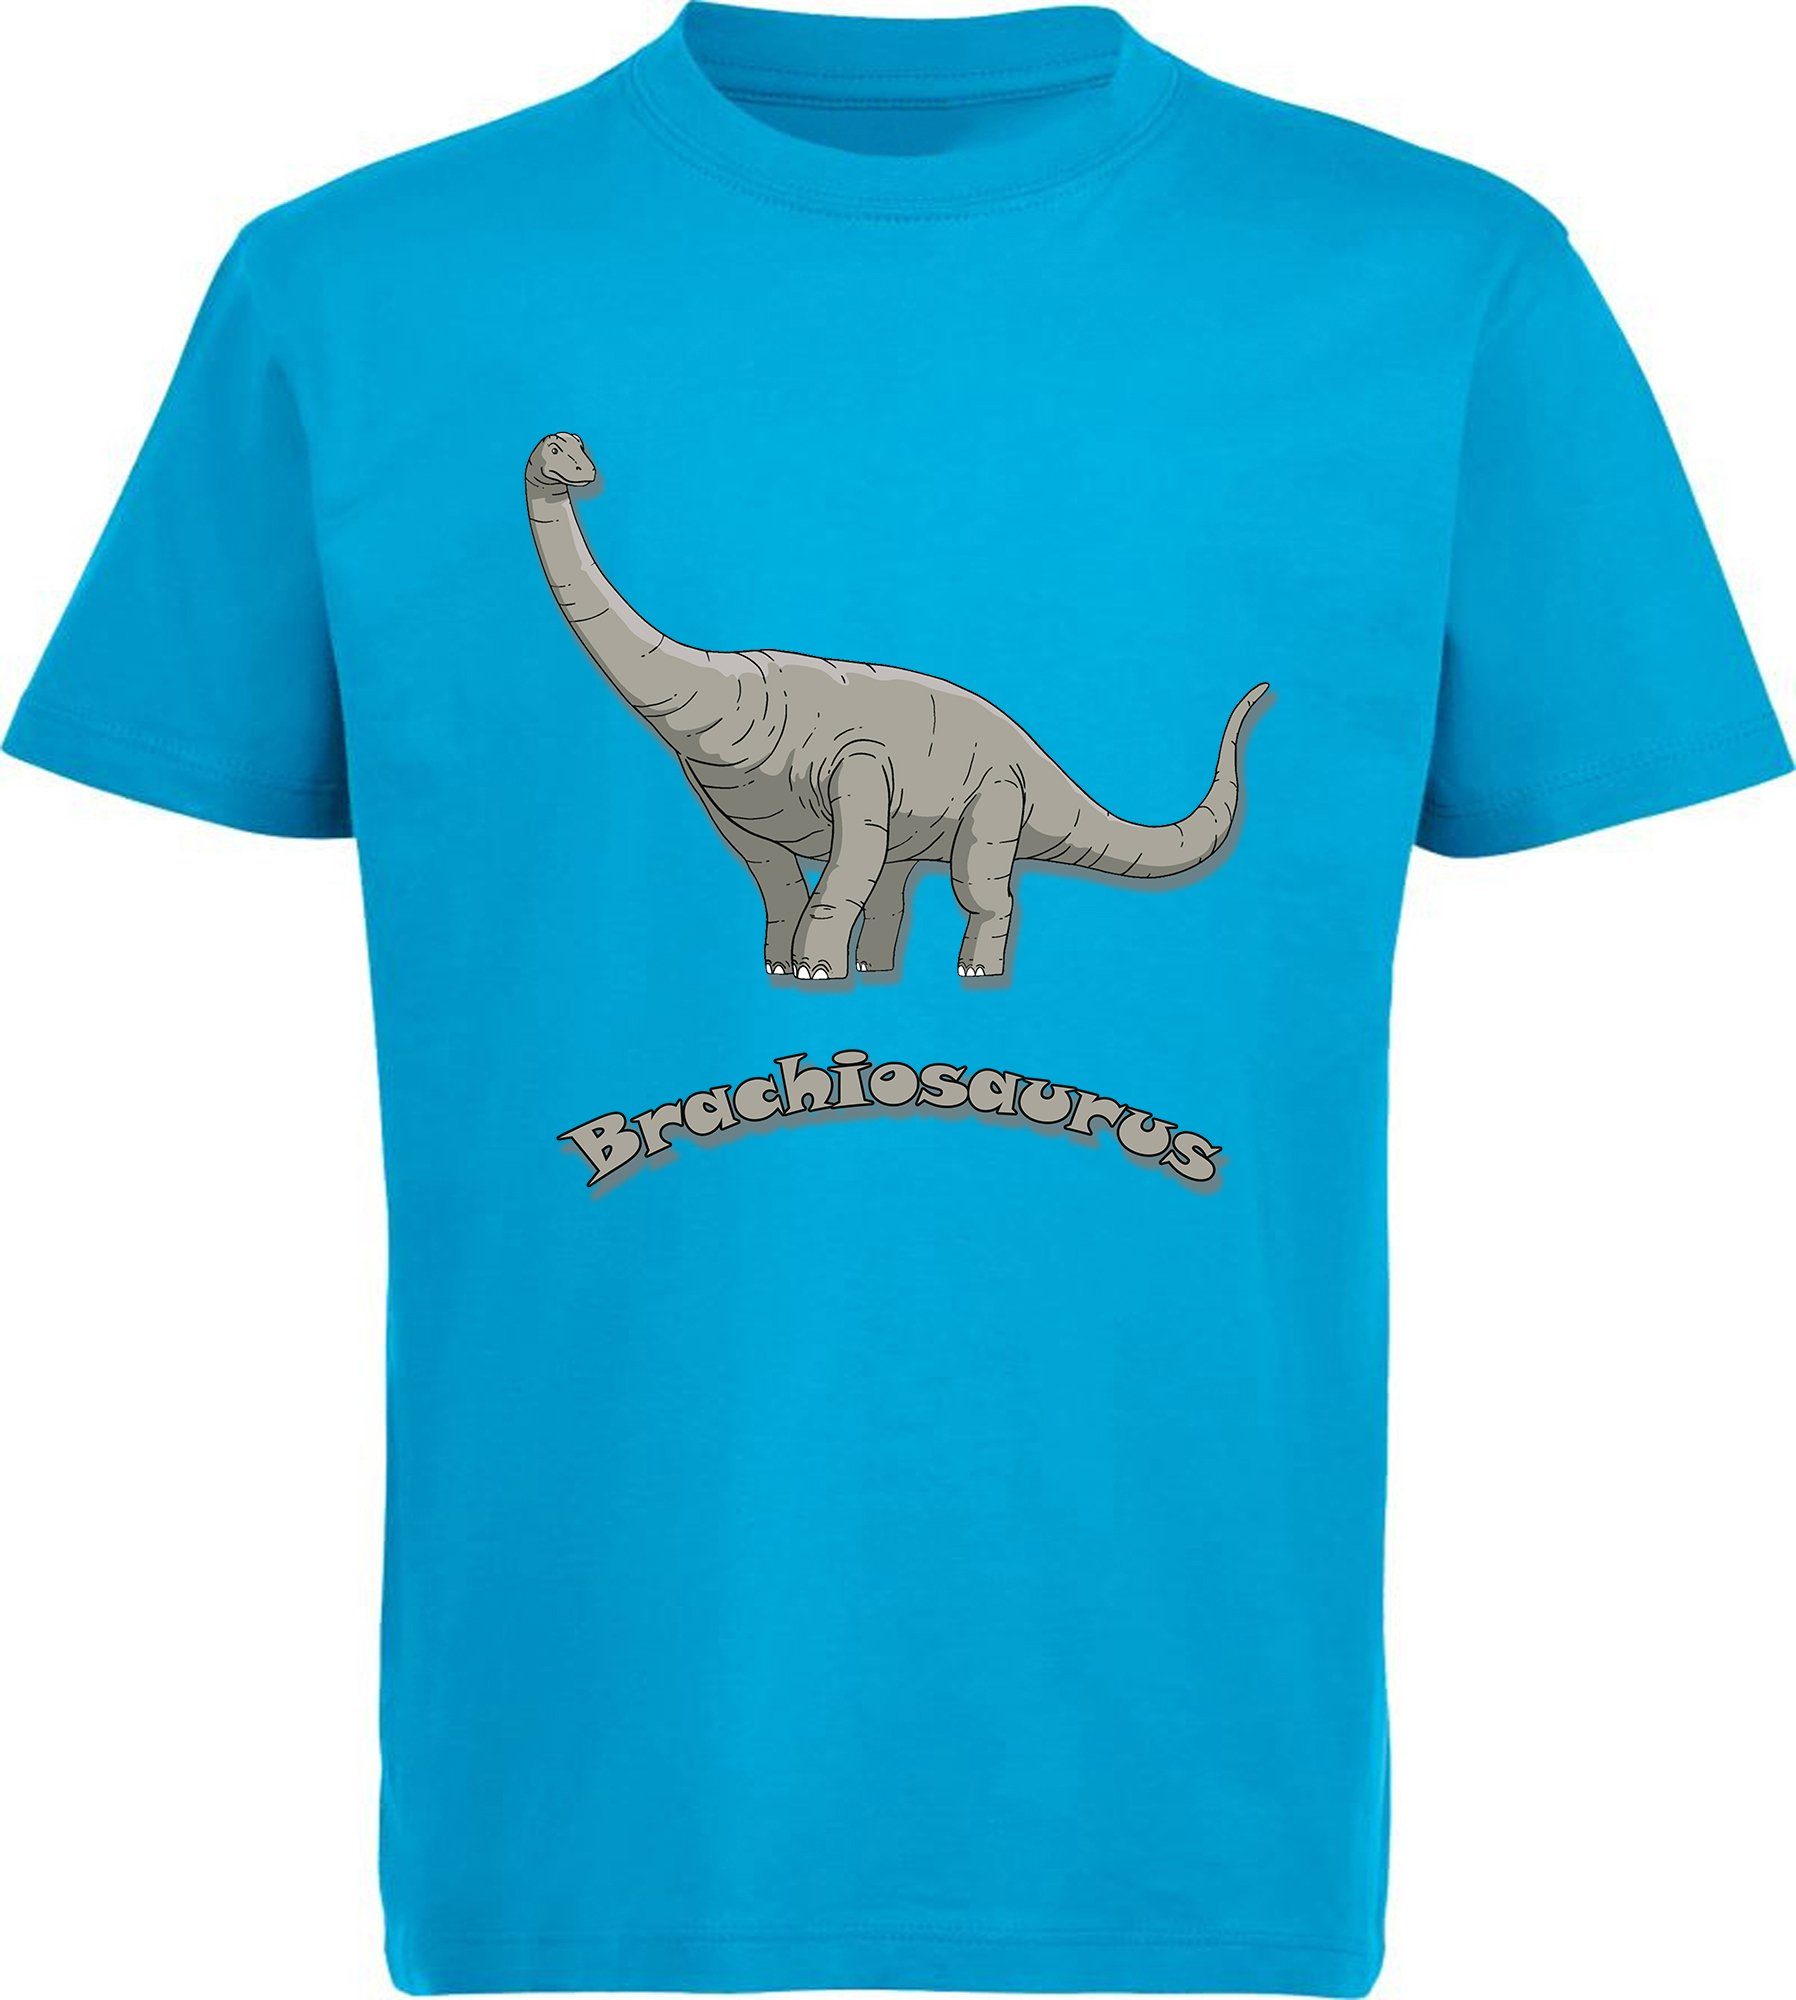 MyDesign24 Print-Shirt bedrucktes Kinder T-Shirt mit Brachiosaurus Baumwollshirt mit Dino, schwarz, weiß, rot, blau, i66 aqua blau